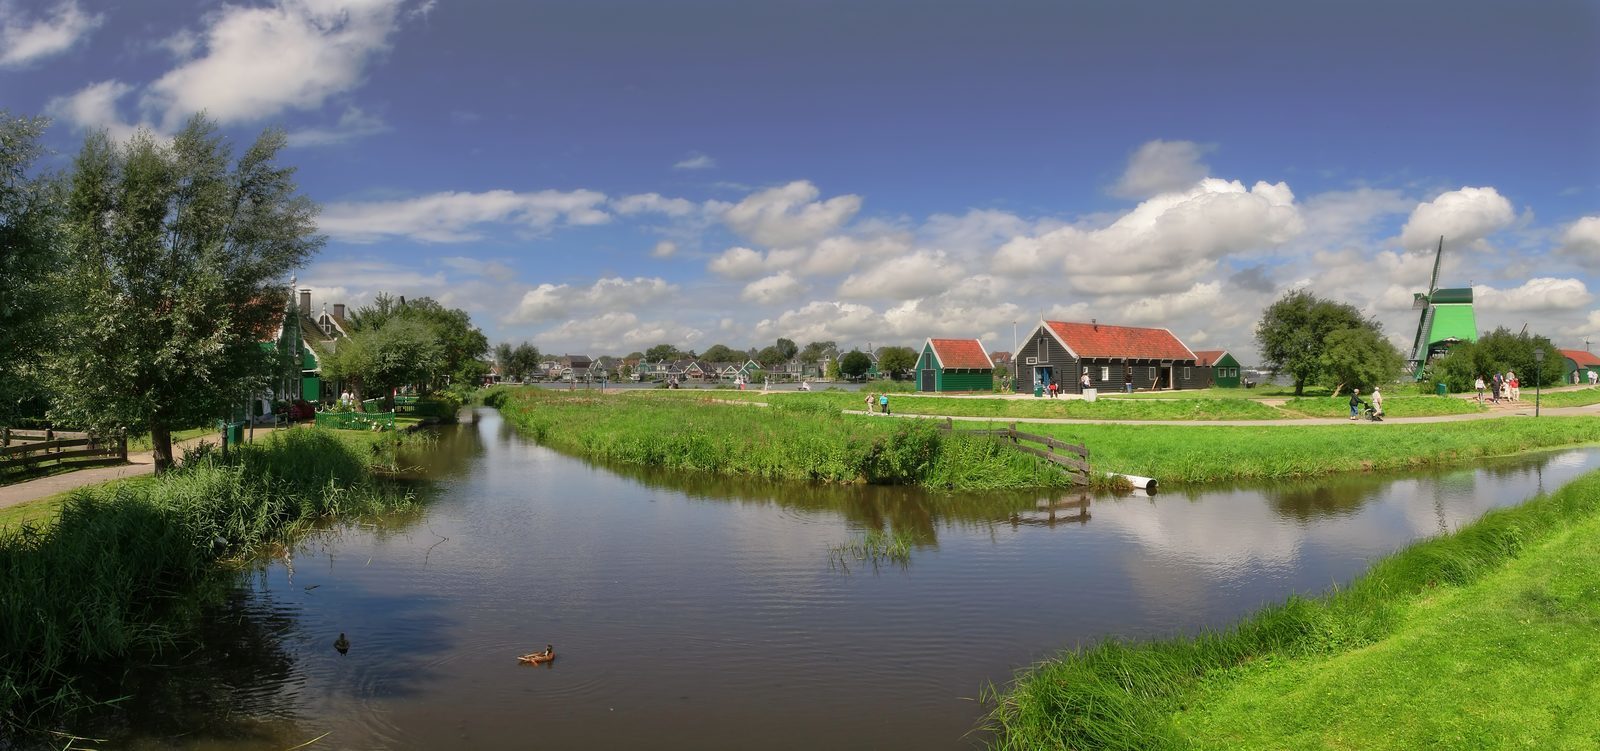 Vakantiewoning kopen in Noord-Holland